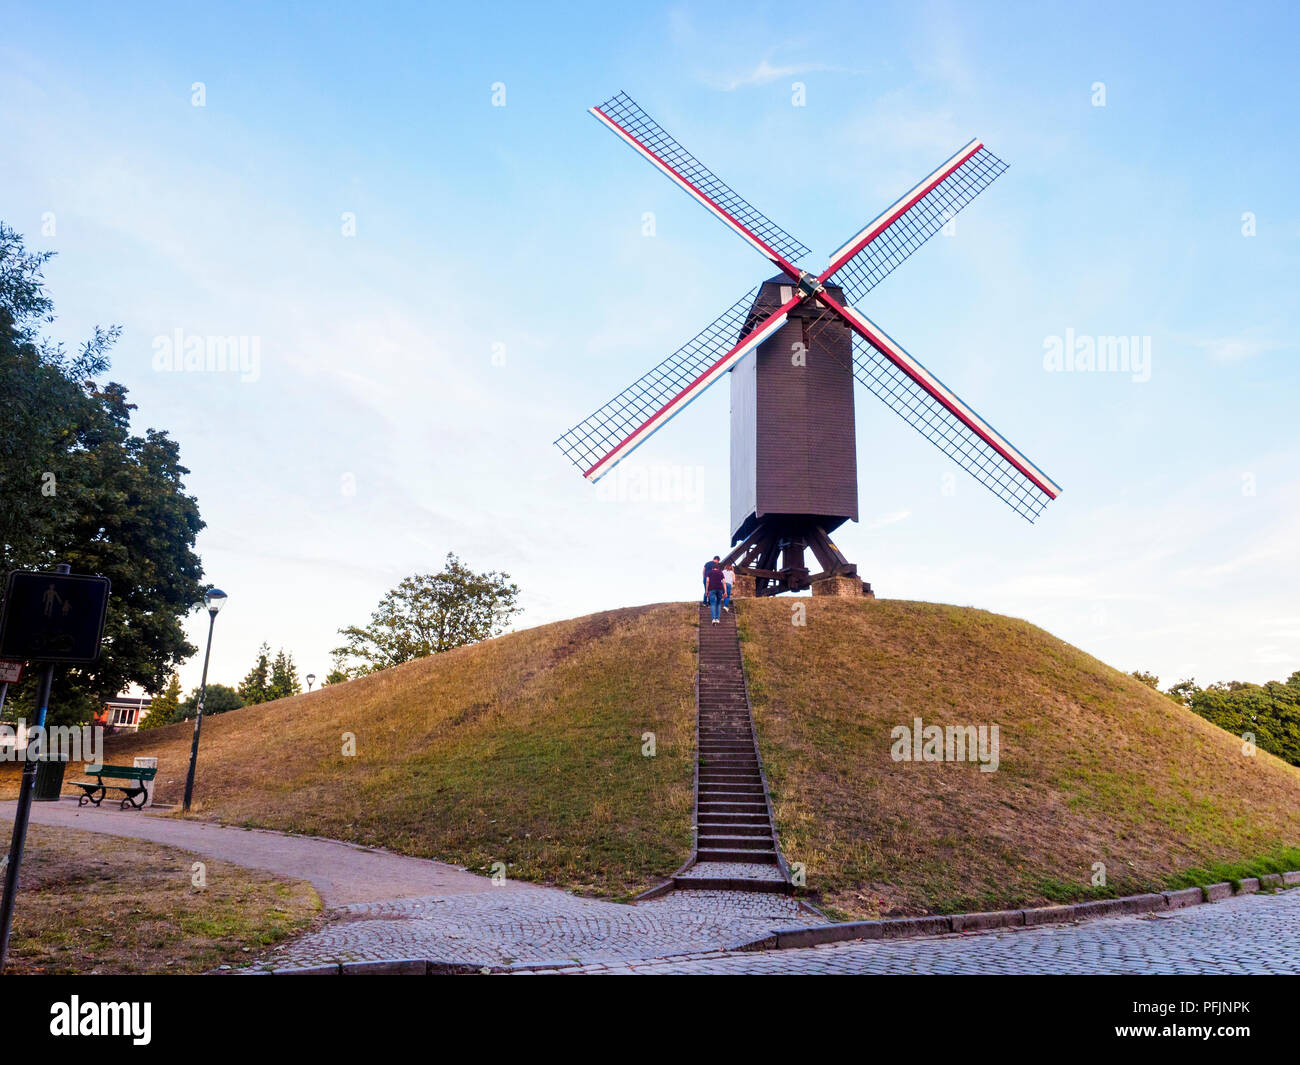 Sint-Janshuismolen windmill grinding grain in its original location since 1770 - Bruges, Belgium Stock Photo